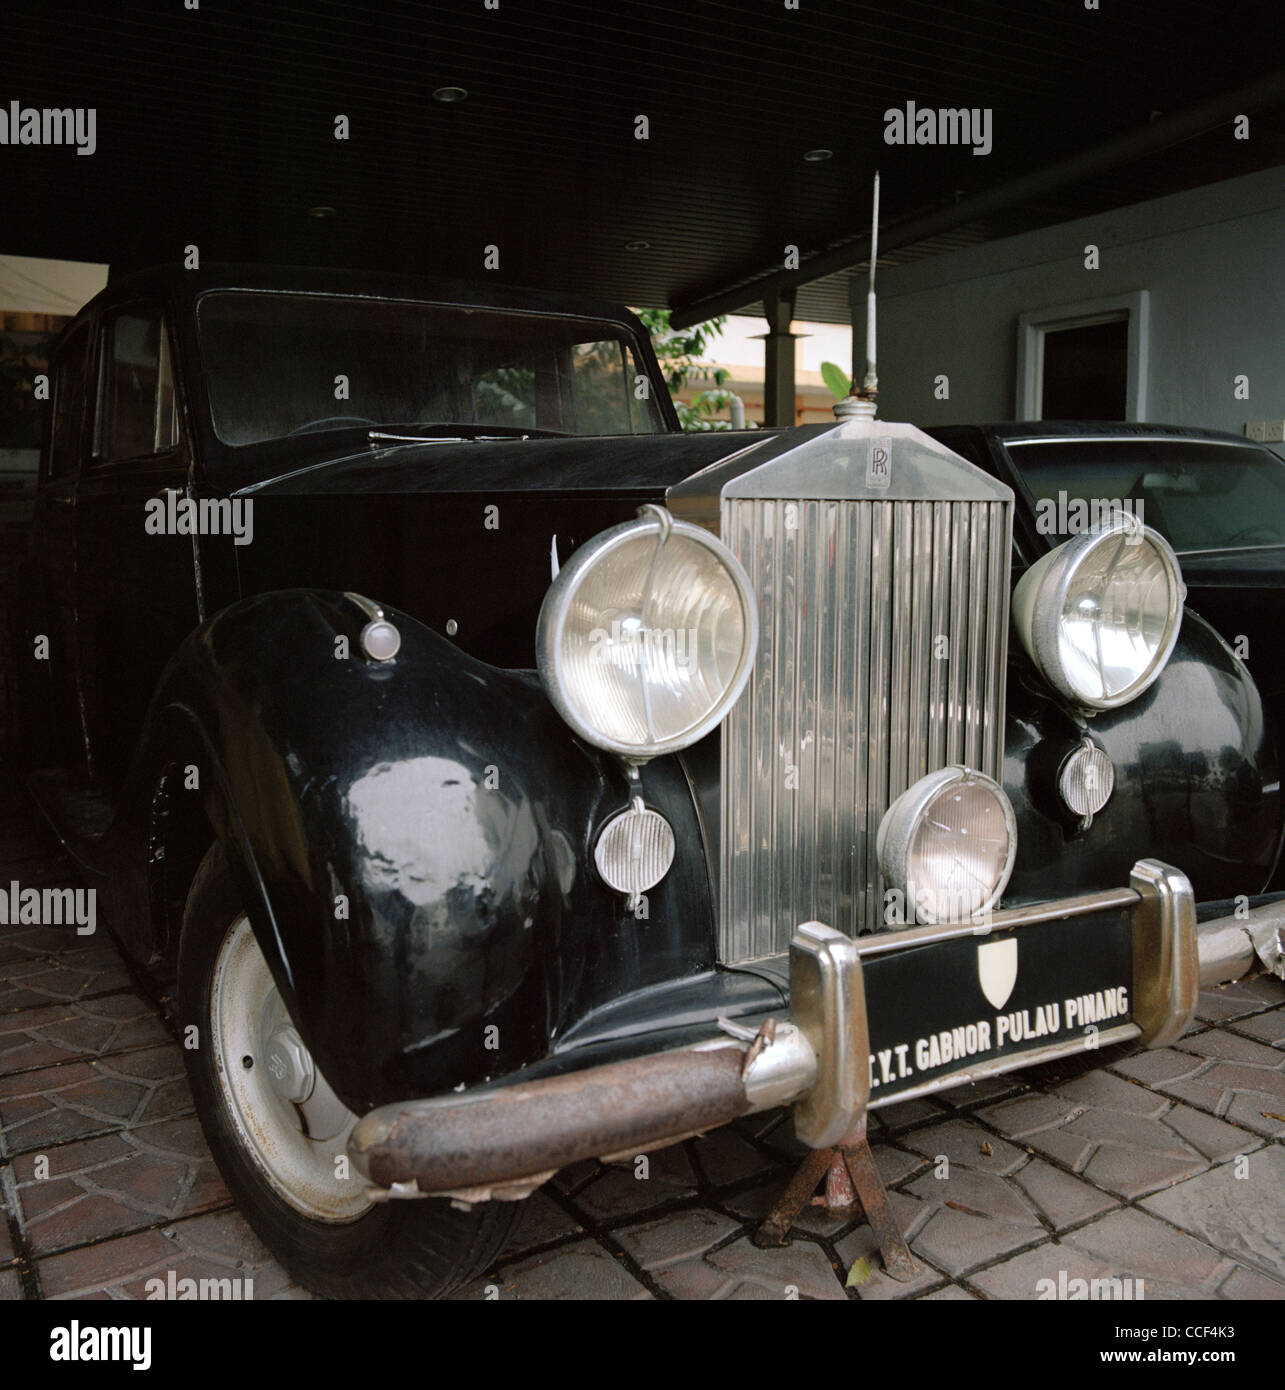 Administrateur colonial britannique Sir Henry Gurney's Rolls Royce voiture à George Town dans l'île de Penang en Malaisie Extrême-Orient Asie du sud-est. Billet d'histoire Banque D'Images